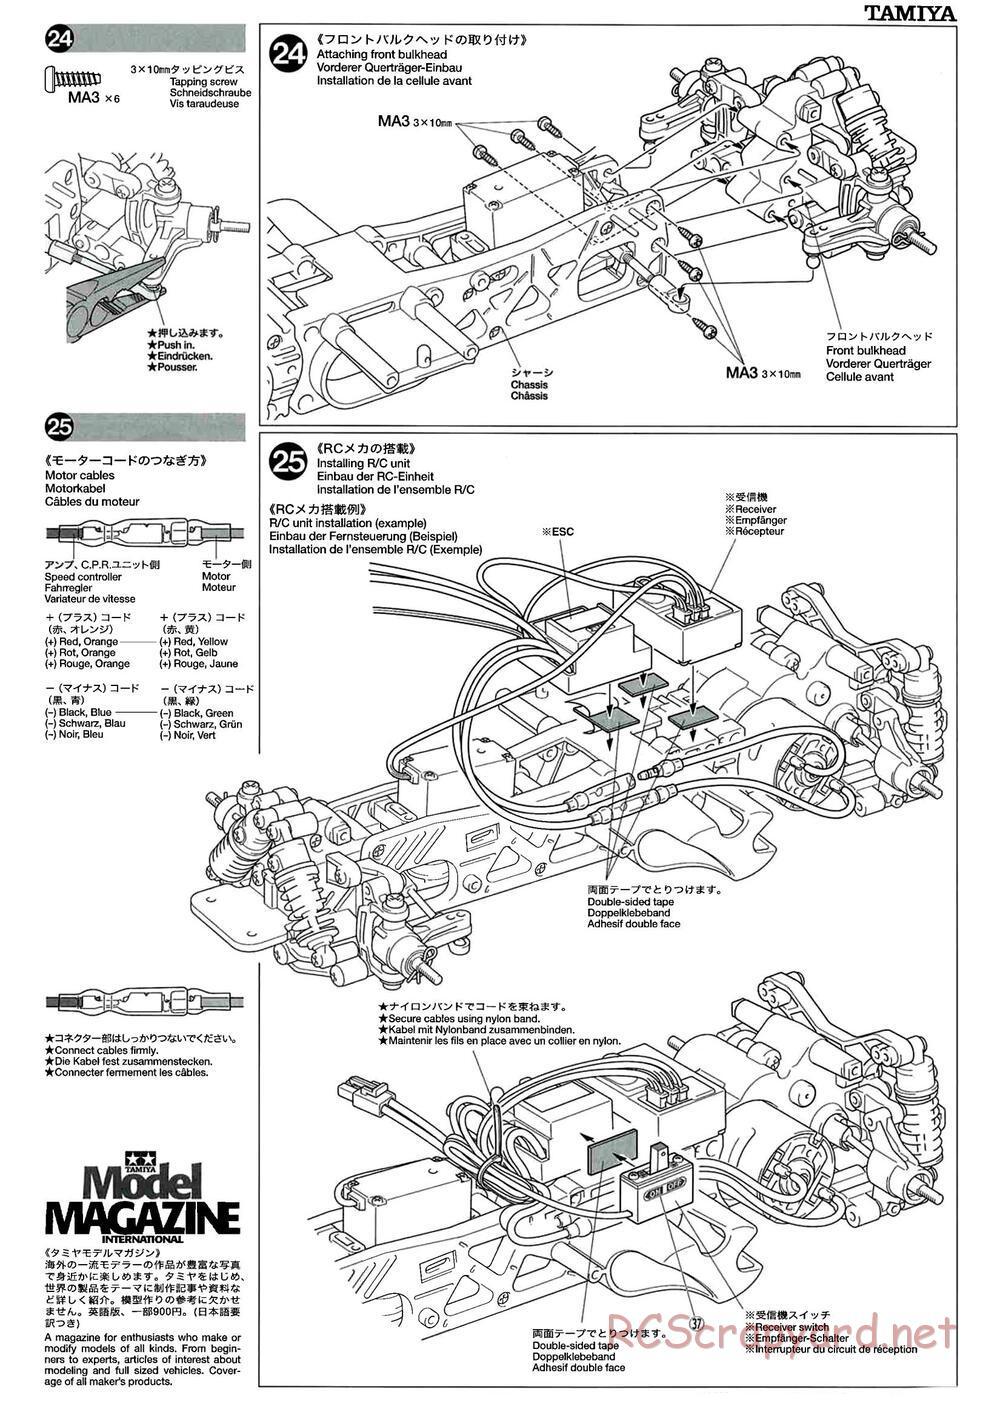 Tamiya - M-04L Chassis - Manual - Page 13